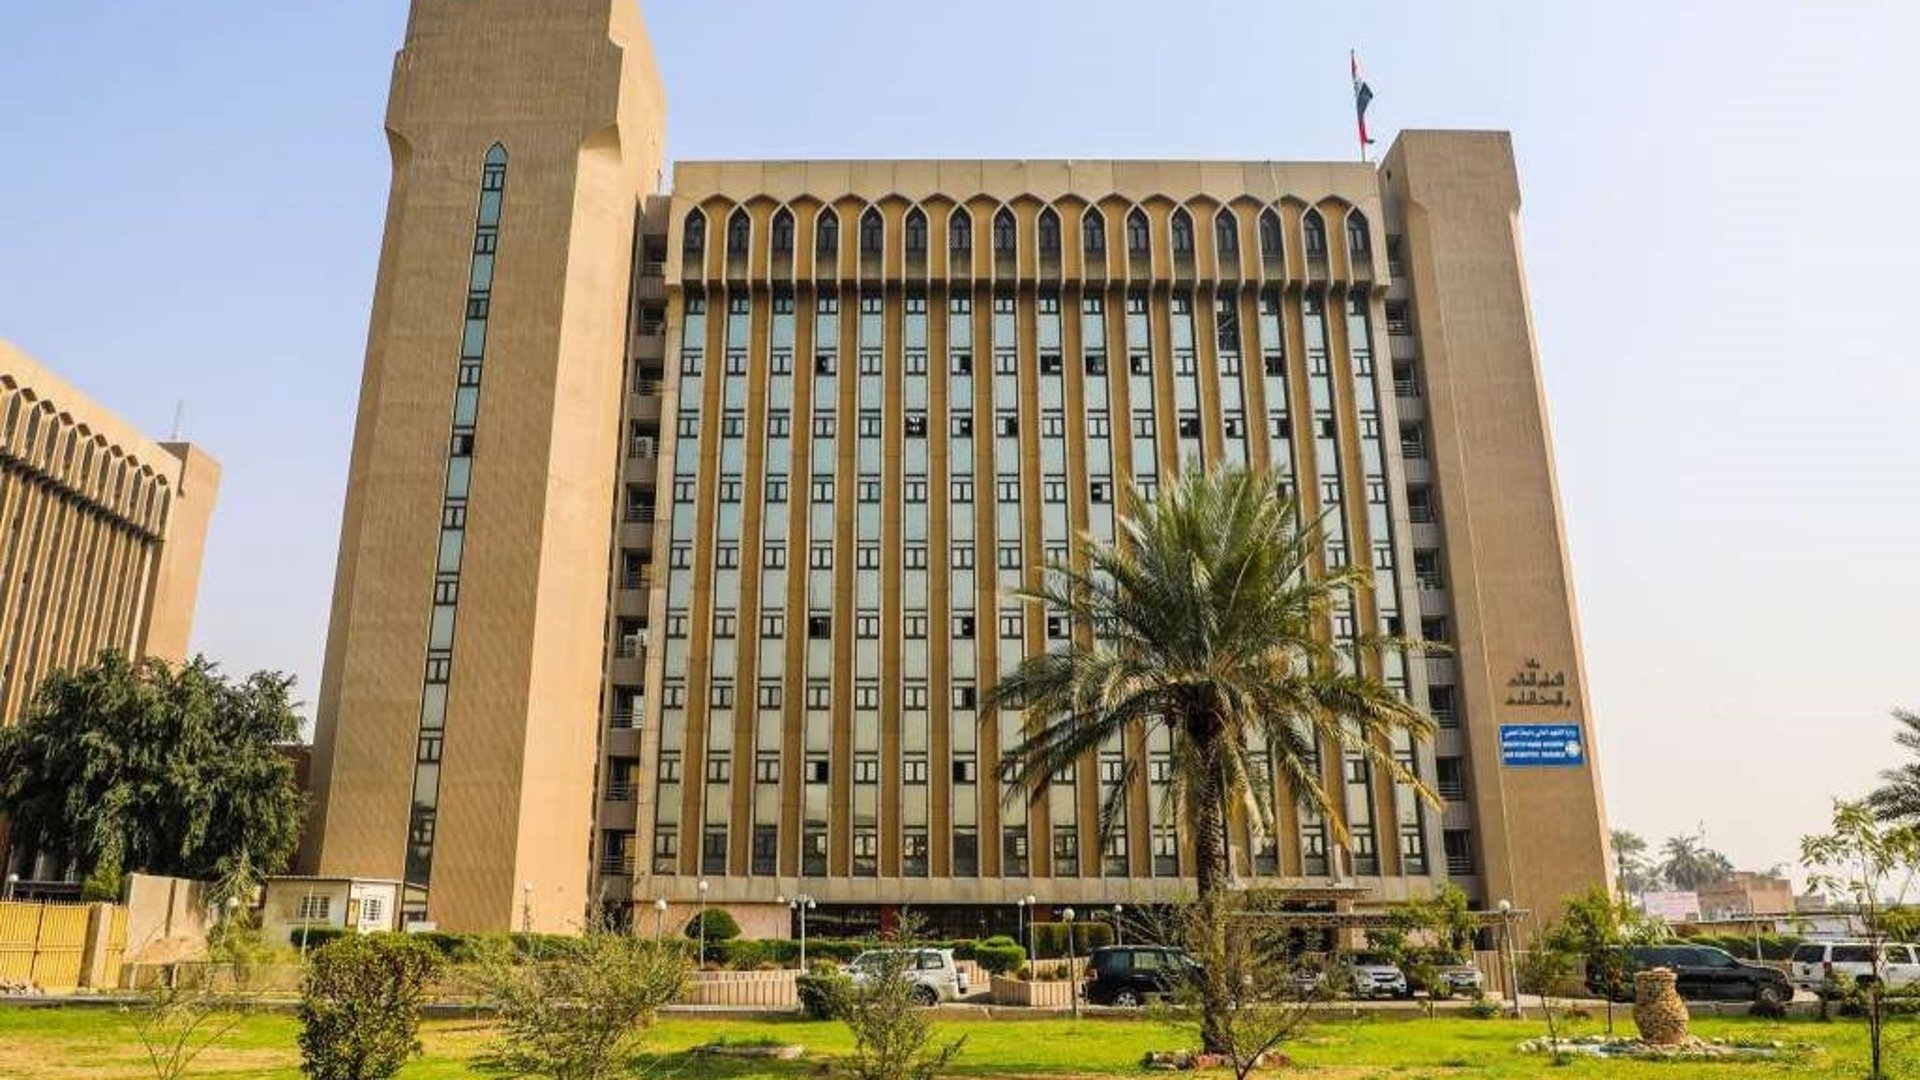 13 جامعة عراقية في تصنيف التايمز والتكنولوجية الأعلى ترتيباً بينها